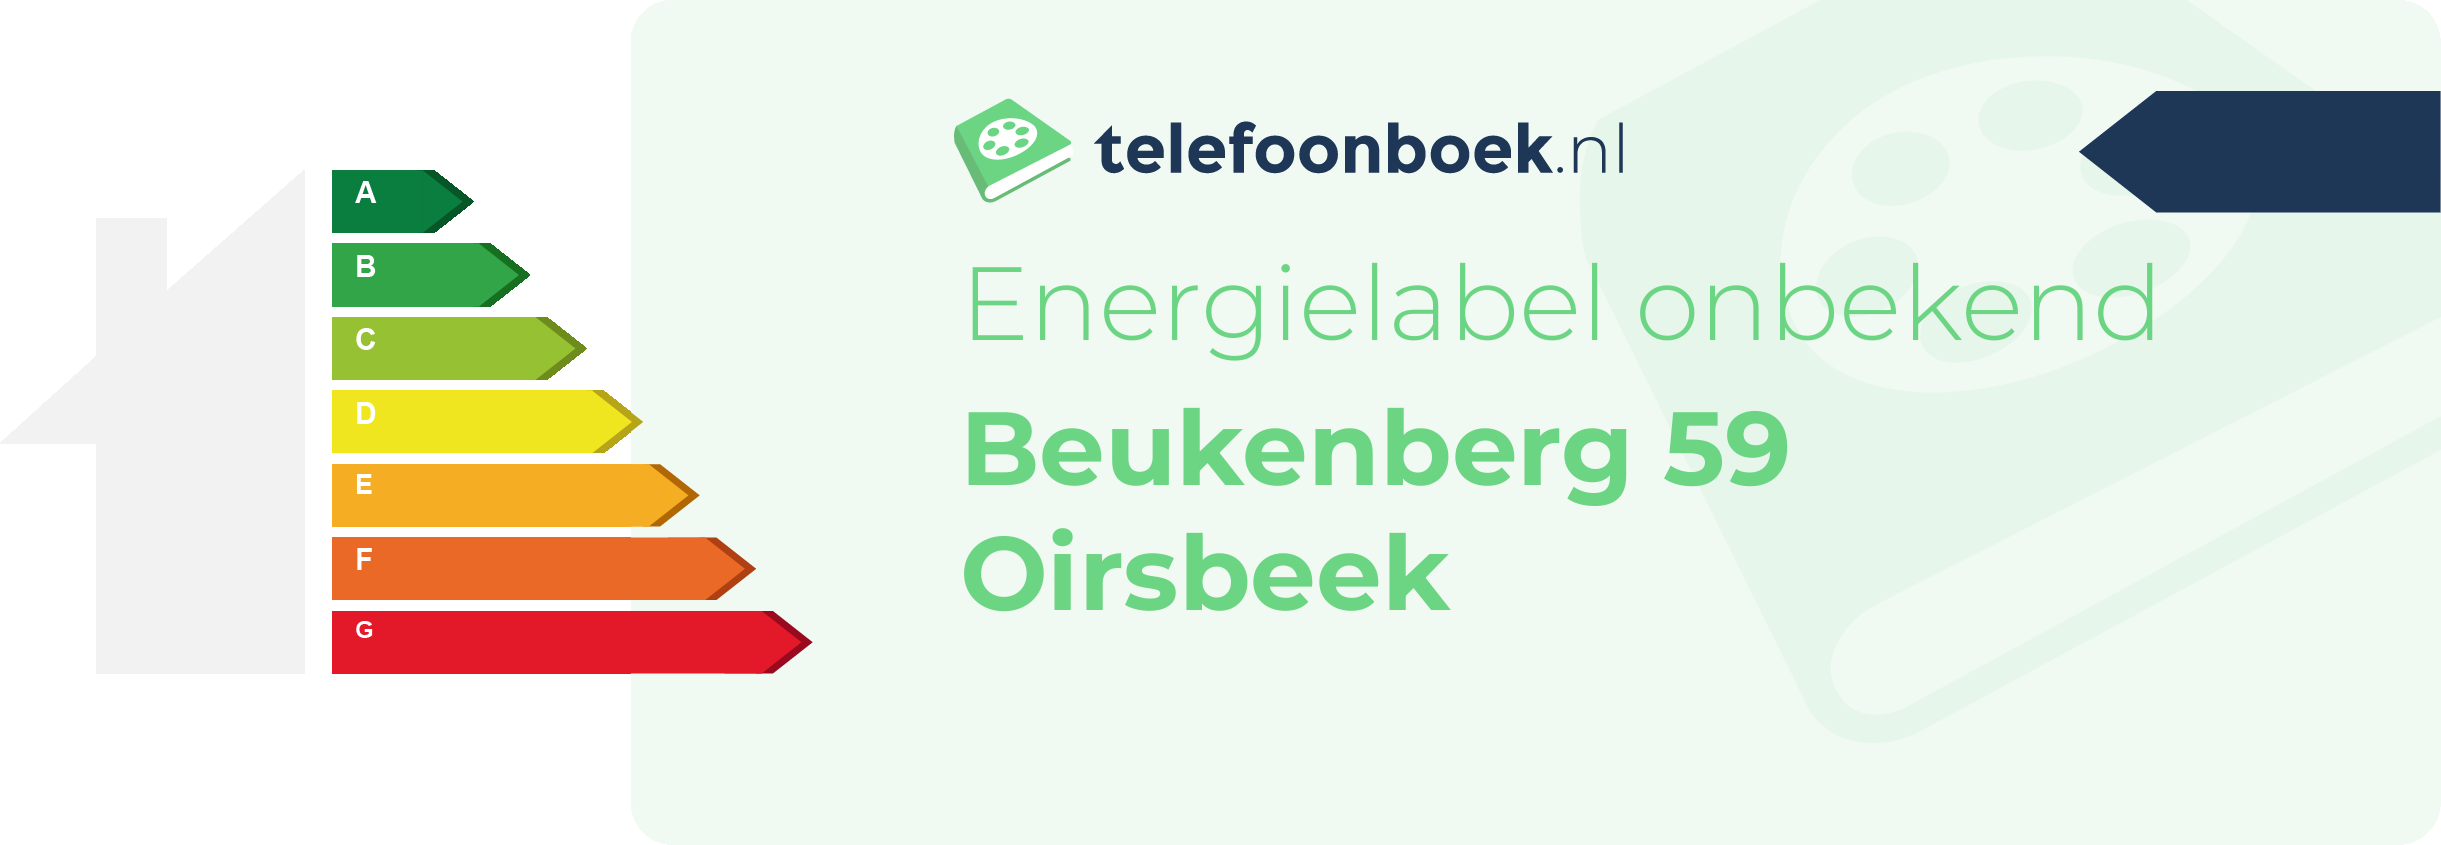 Energielabel Beukenberg 59 Oirsbeek